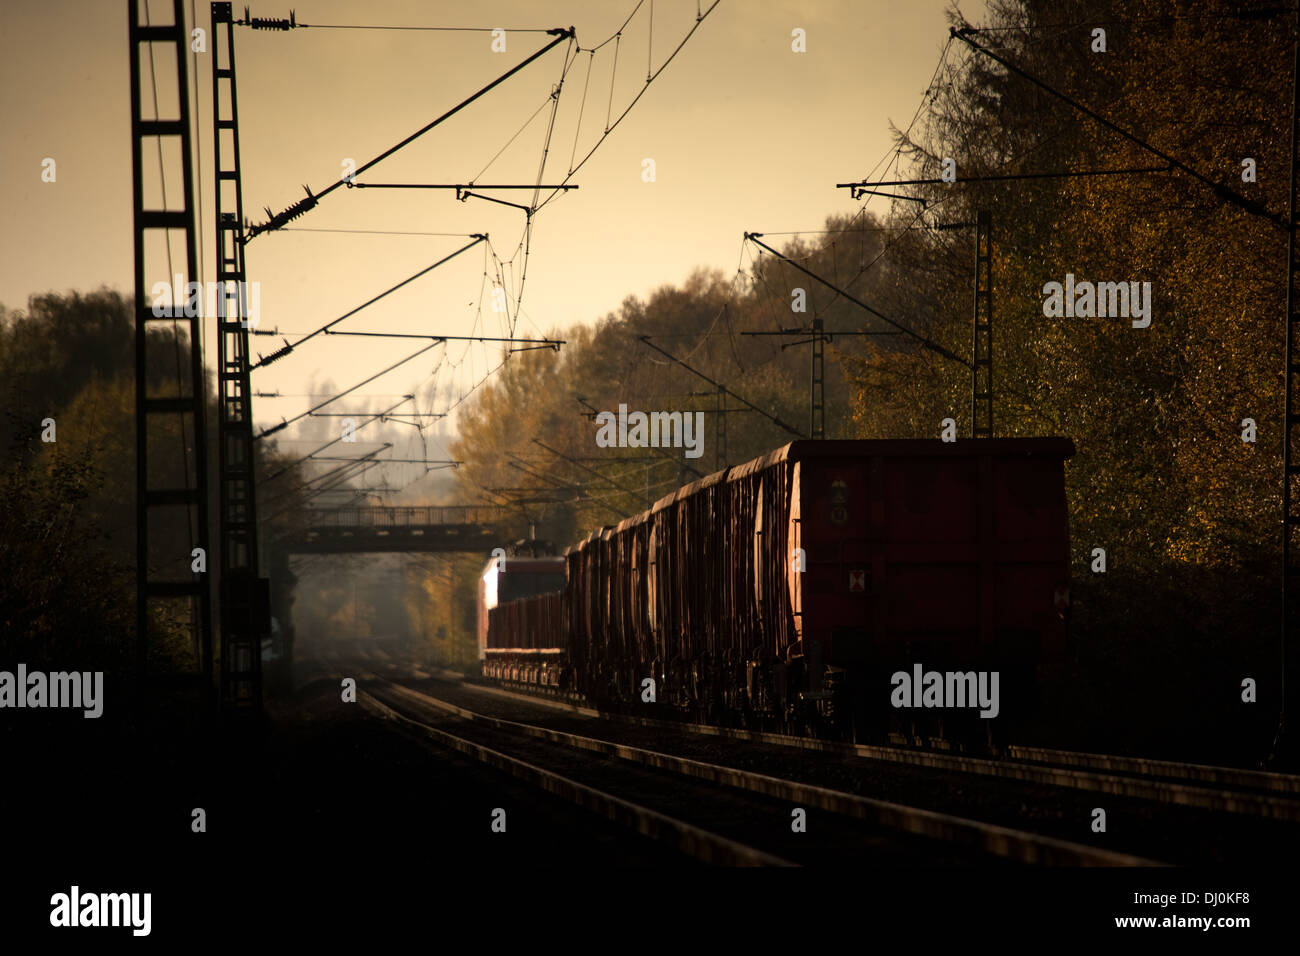 Gemischter Güterzug mit Décrets d-x Samms und auf der Rollbahn (KBS385 Wanne Eikel-Hamburg 0 KM112) Osnabrück (Nov 2013) Banque D'Images